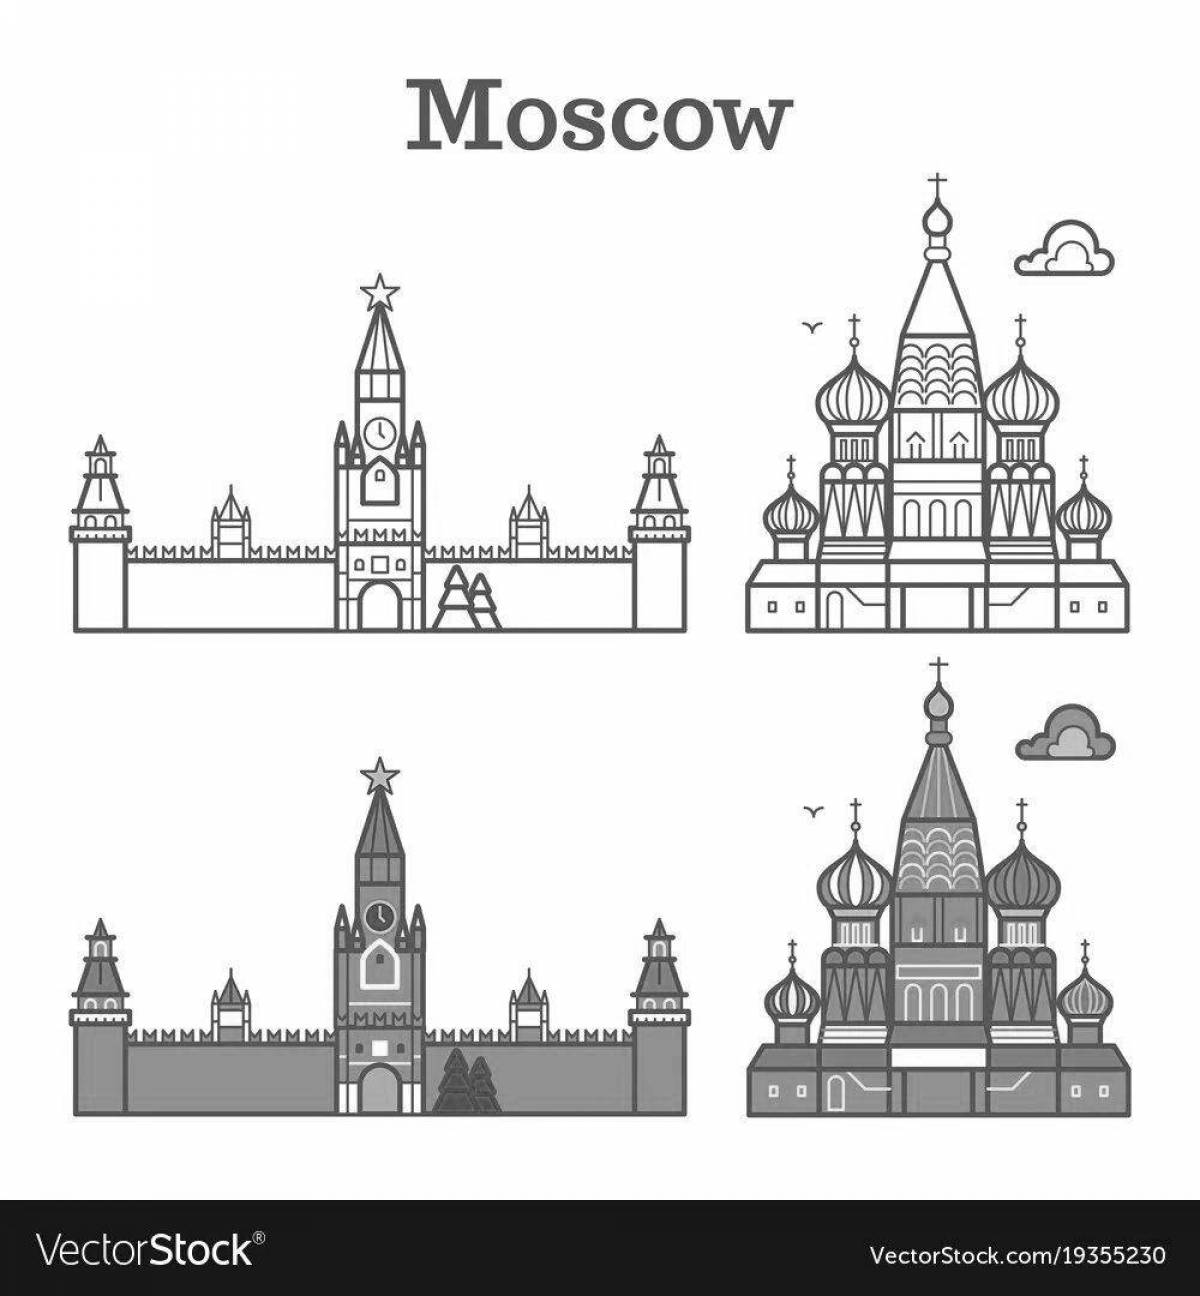 Inviting Kremlin coloring book for preschoolers